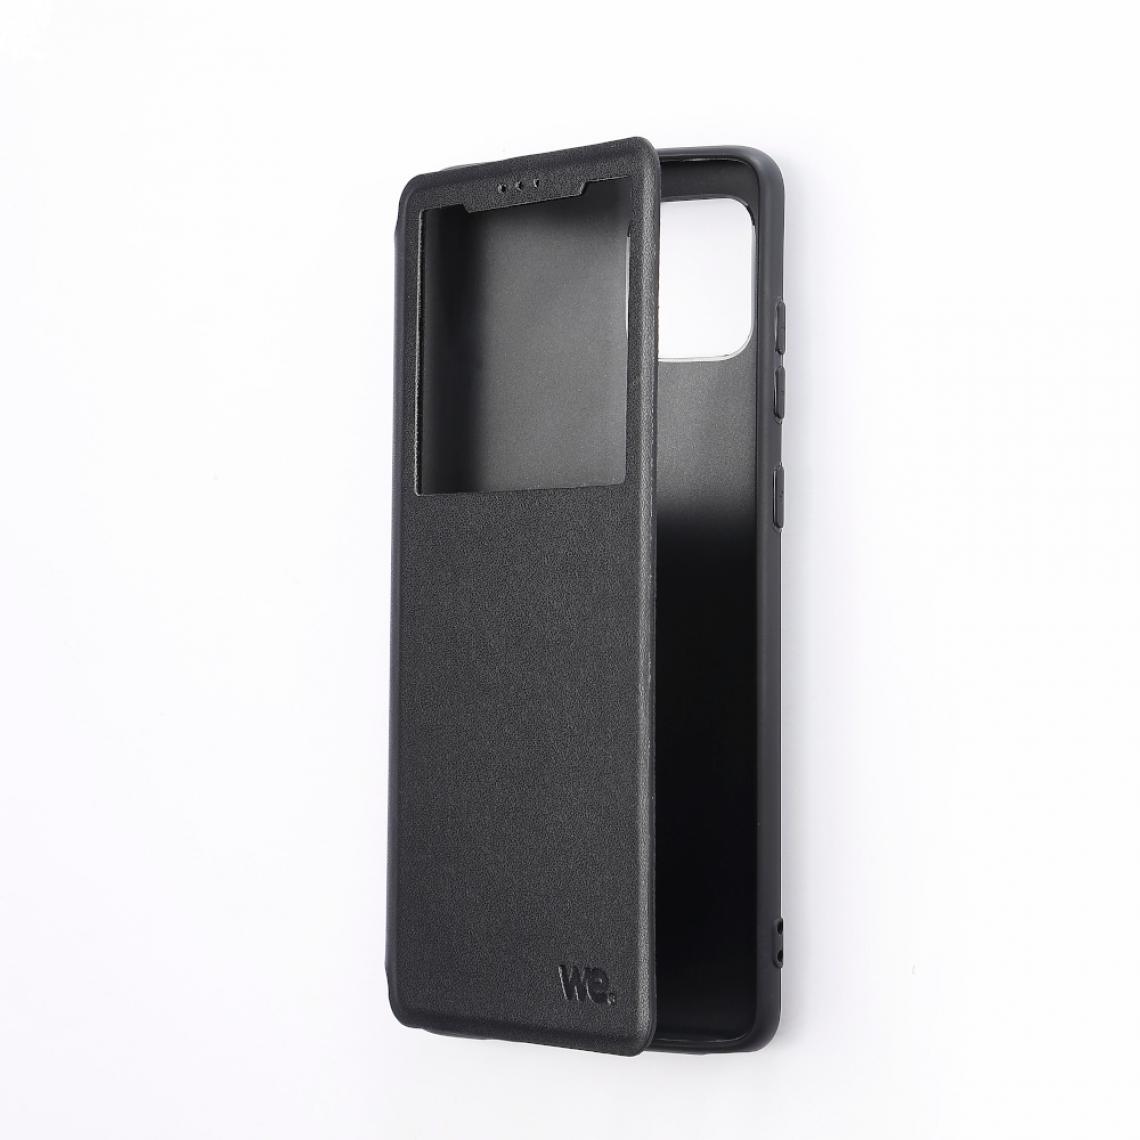 We - ***Folio avec fenêtre - Galaxy J4+ Noir Accès caméra - Léger - Flexible - Autres accessoires smartphone